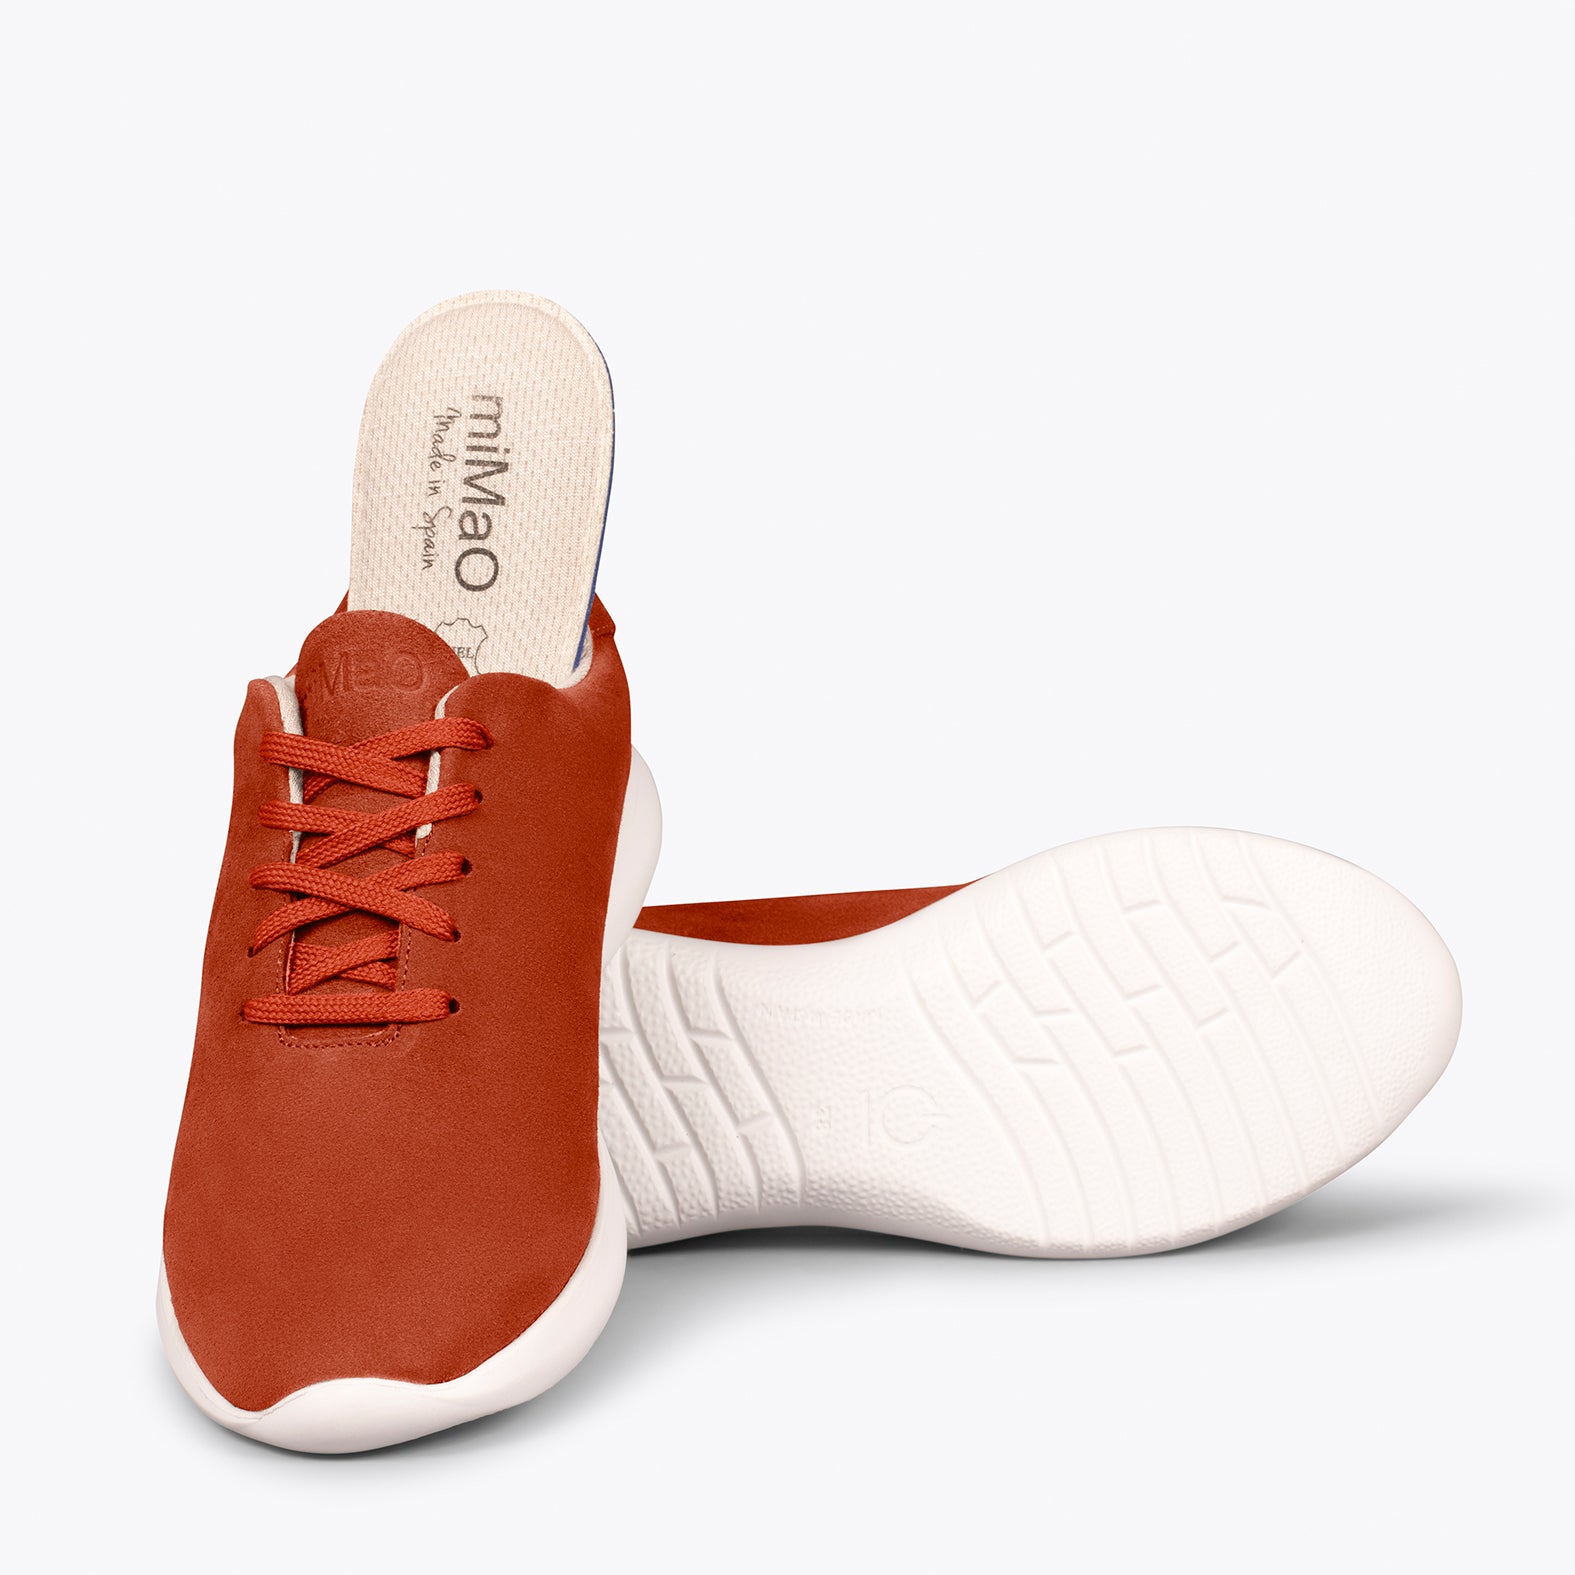 WALK – Zapatillas cómodas de mujer TEJA